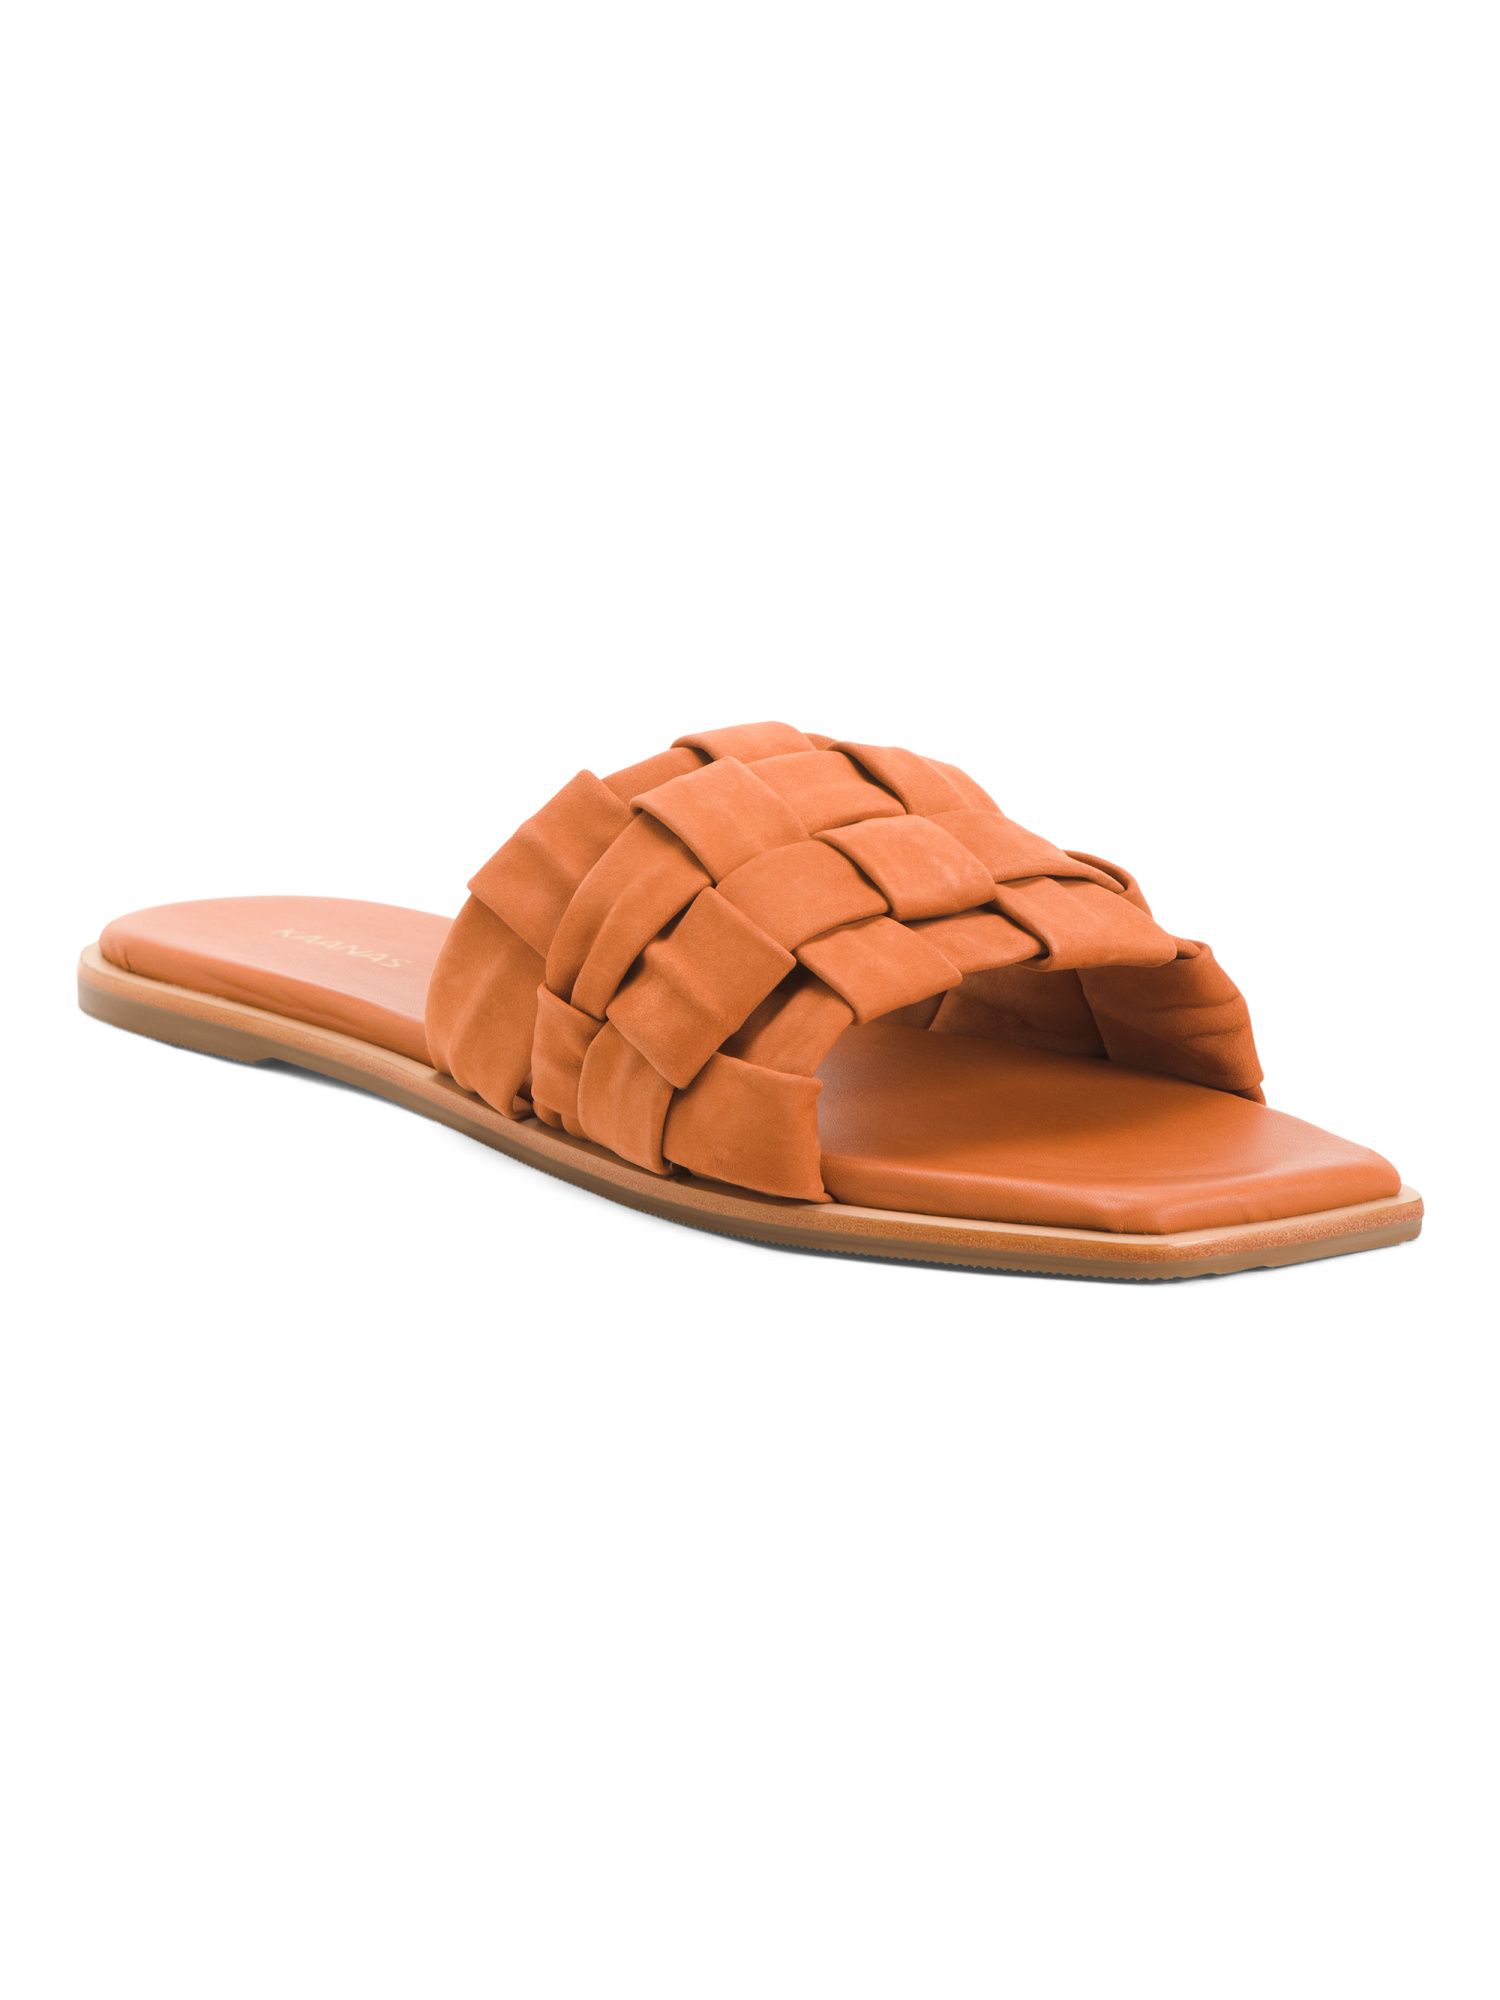 Made In Brazil Leather Belinha Basketweave Slide Sandals | Marshalls